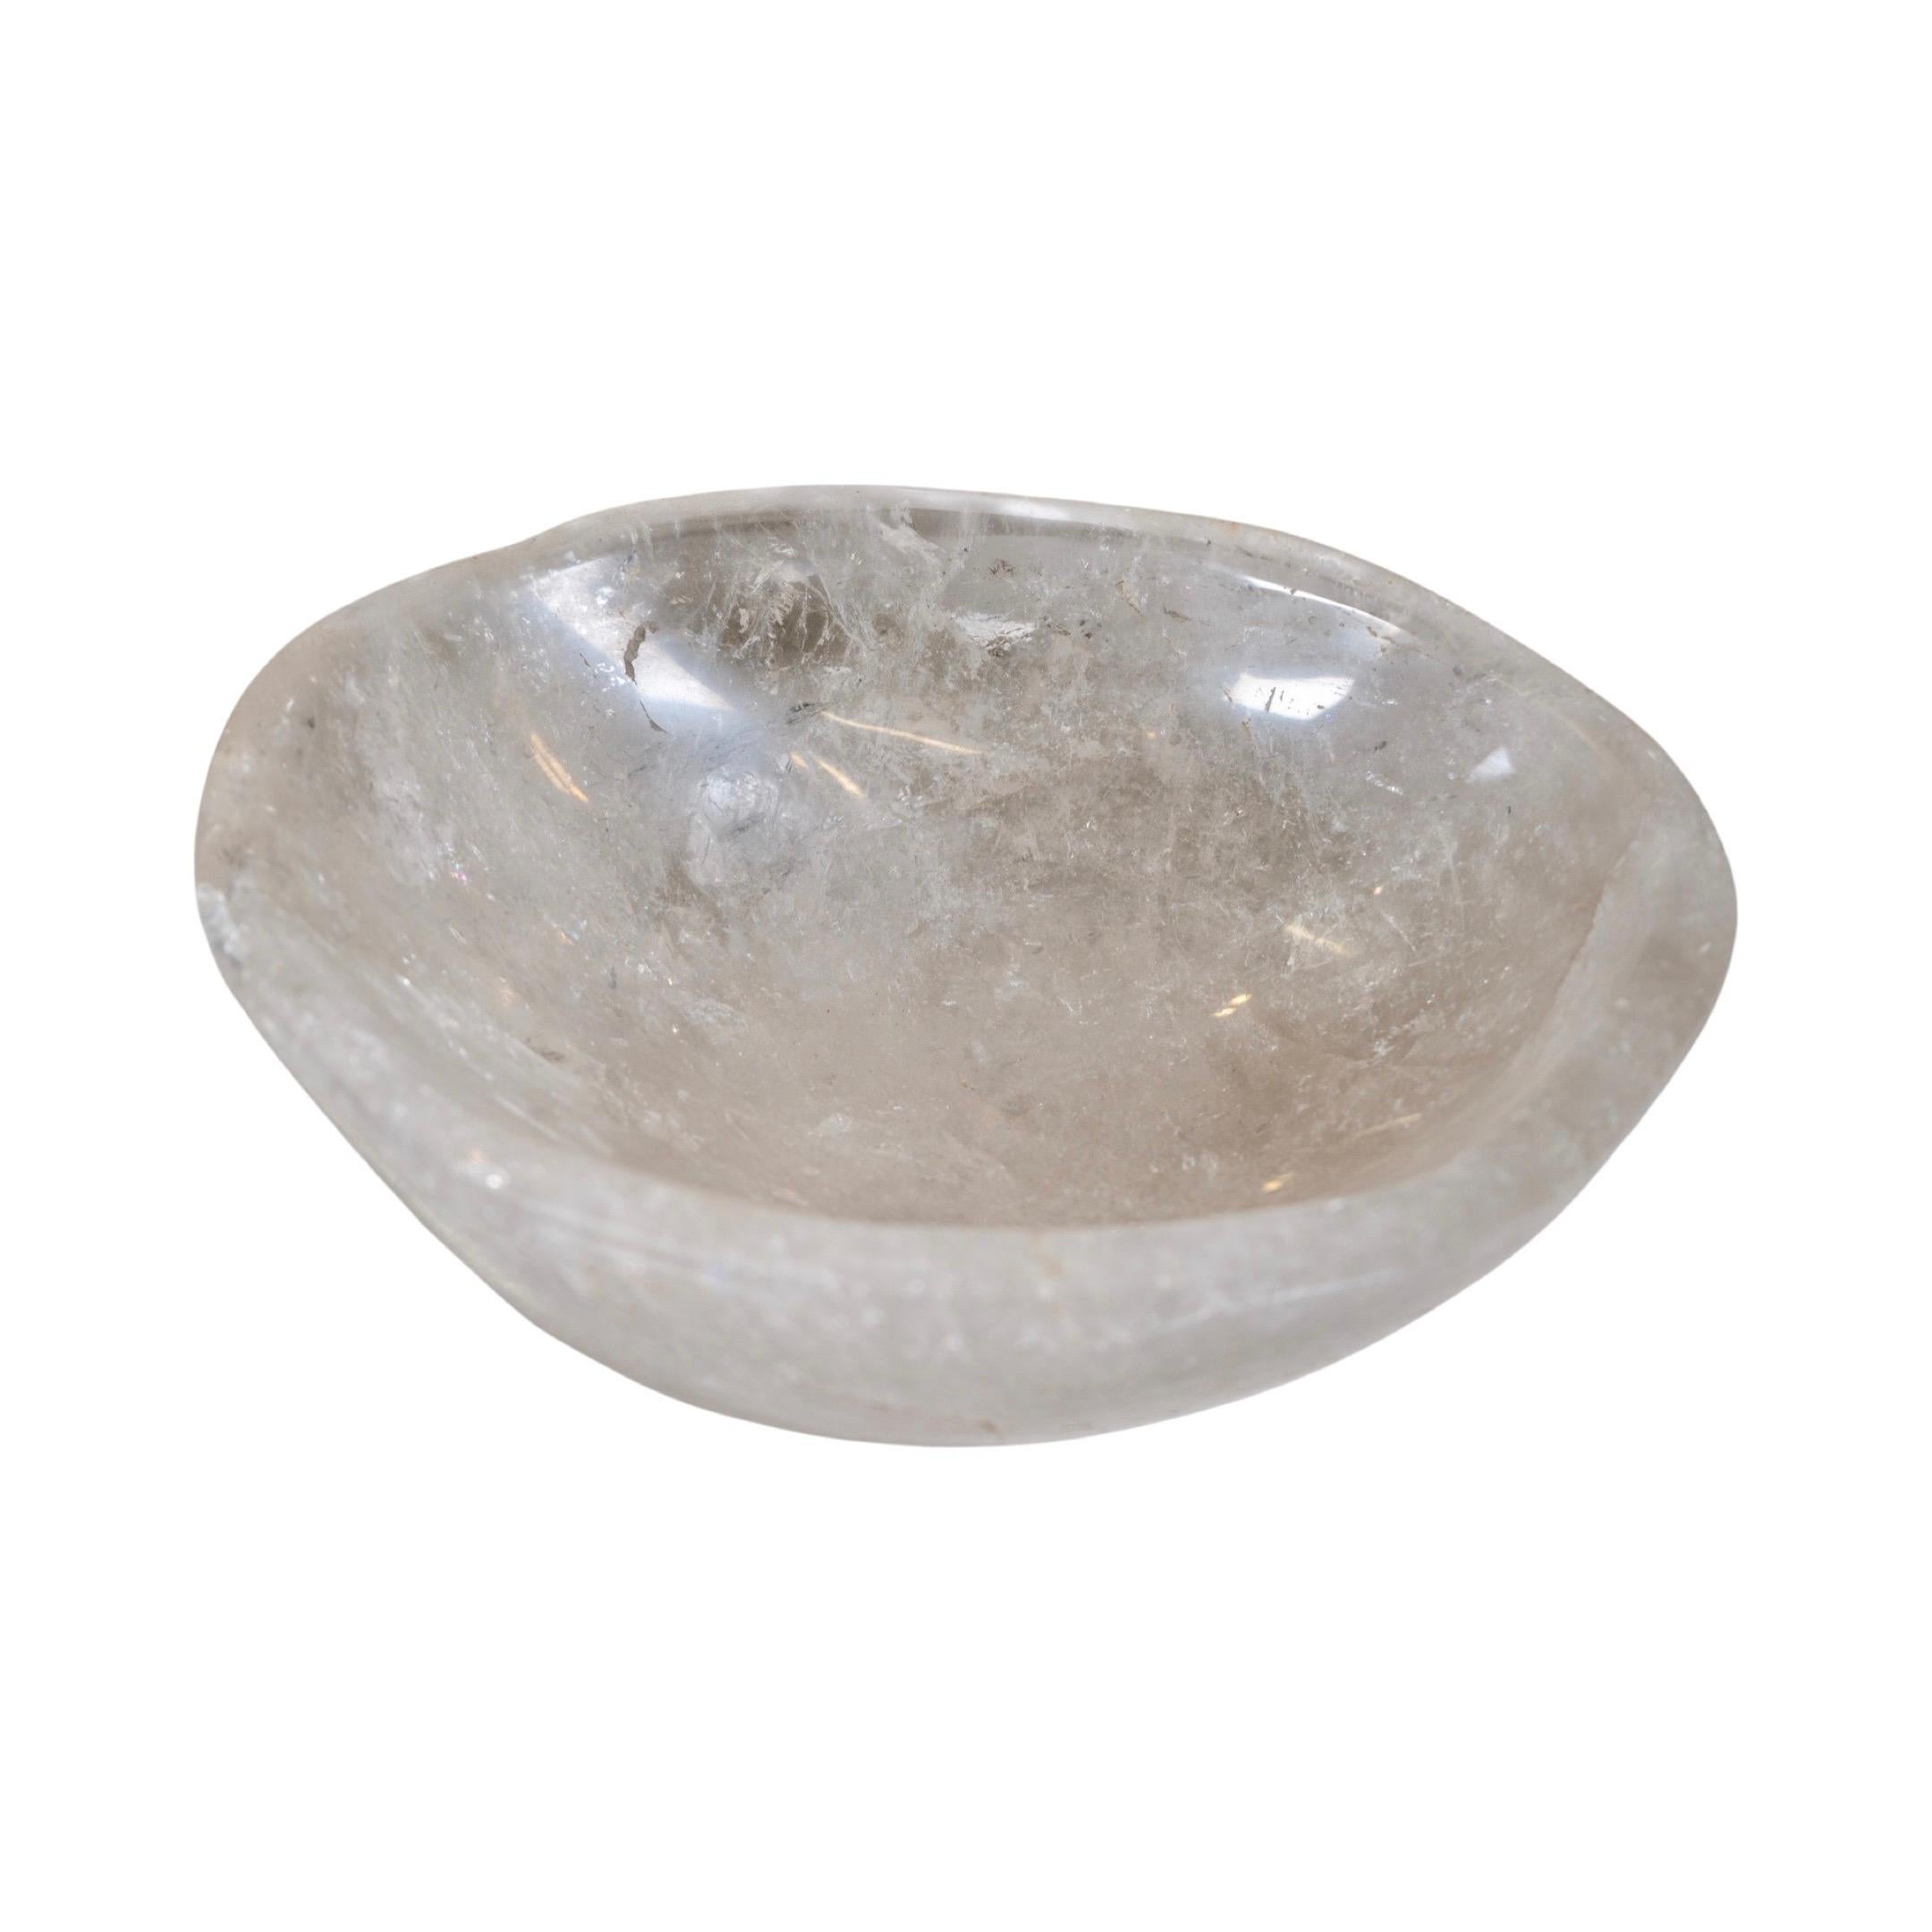 Cette vasque en cristal de roche brésilien poli, fabriquée en 2010, ajoute de la sophistication à toute salle de bains. Il constitue un point de mire élégant et offre à la fois une valeur esthétique et une longévité accrue. Ce superbe lavabo vous